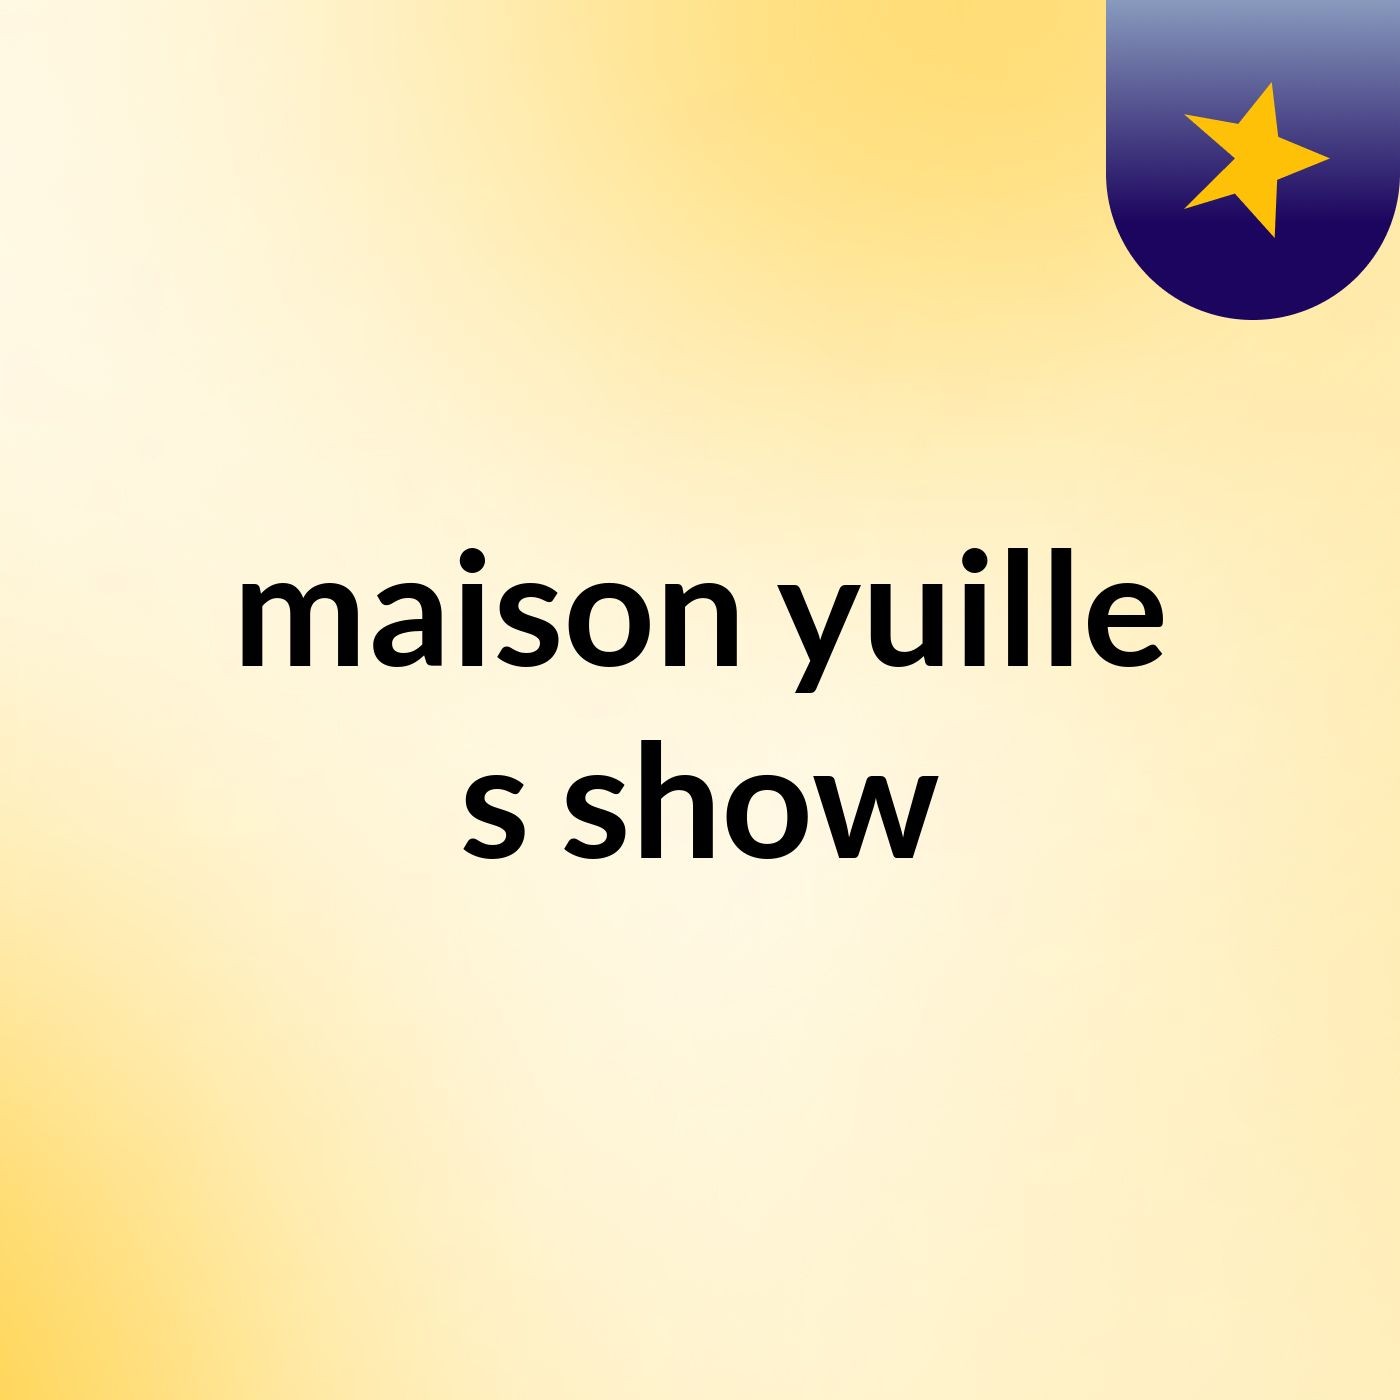 maison yuille's show